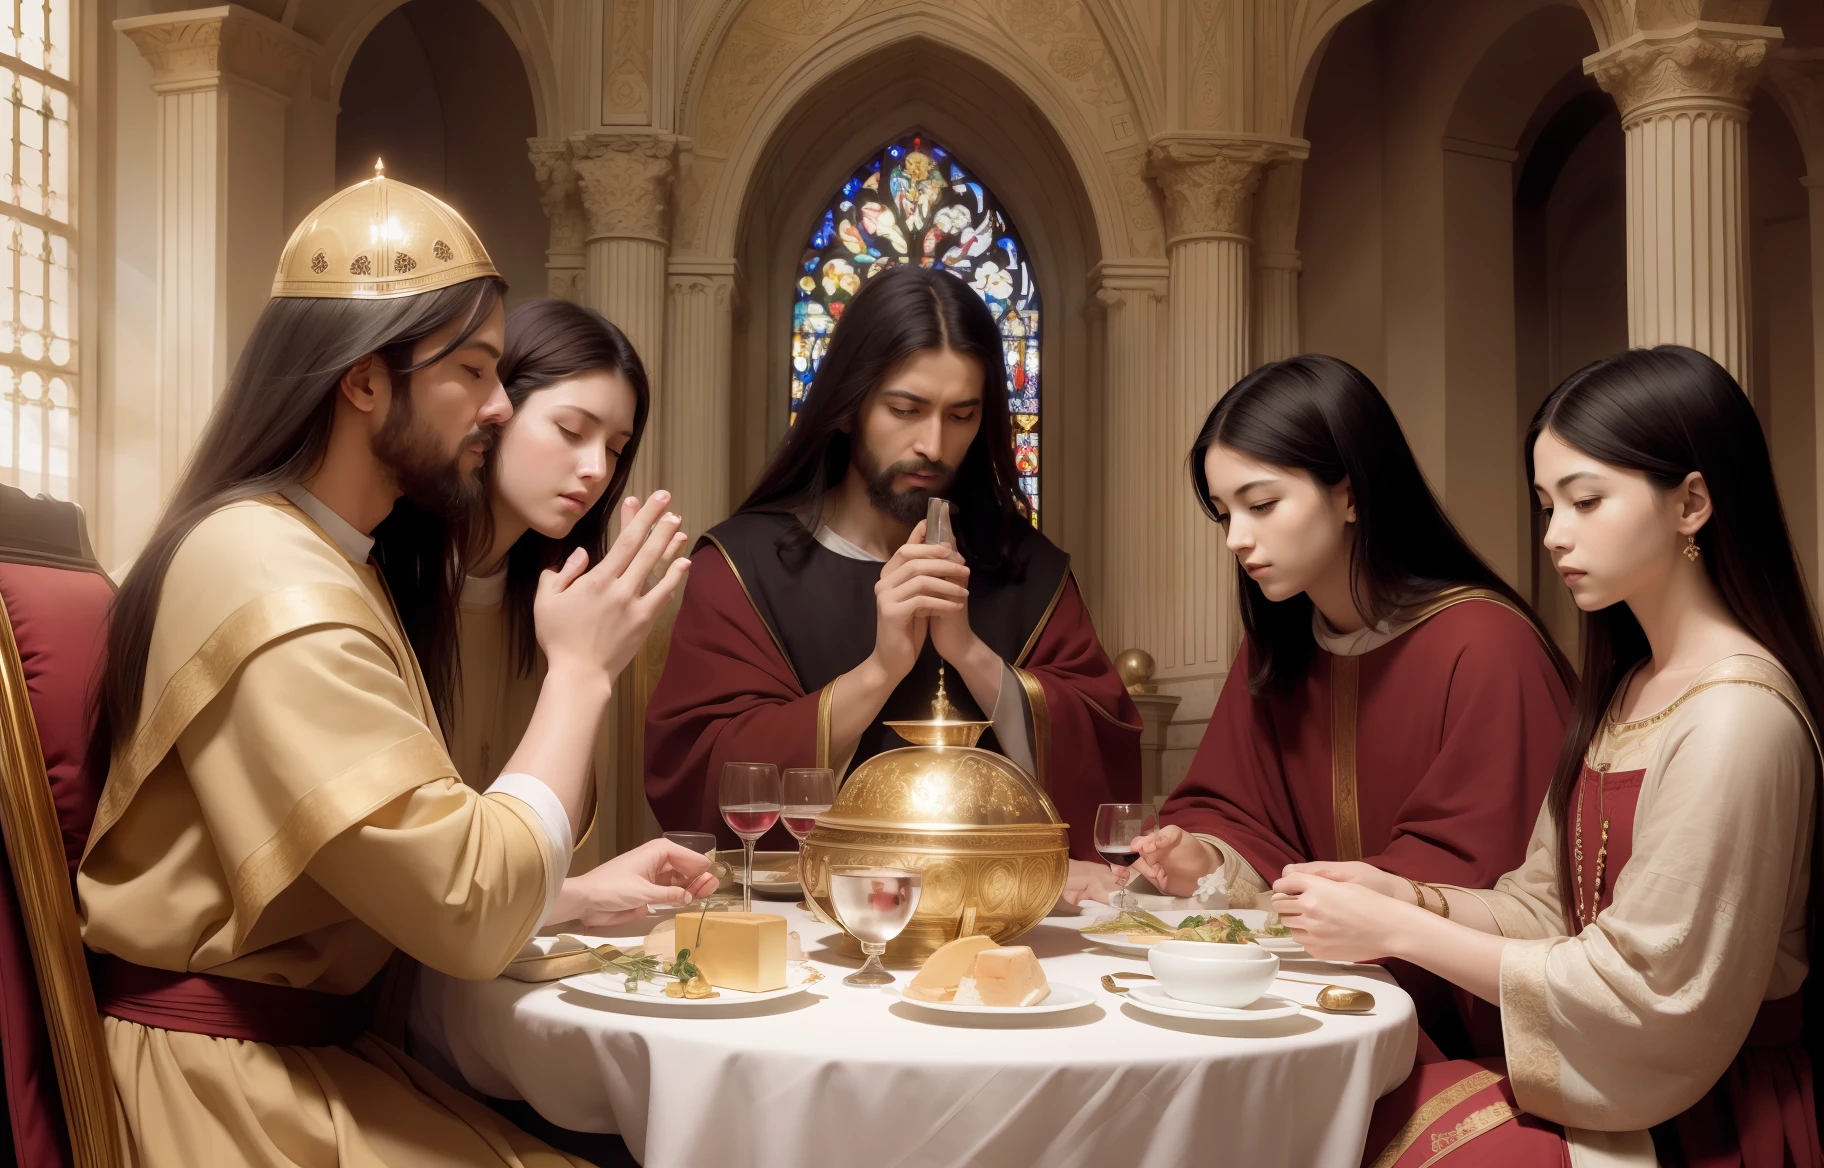 (傑作, 最高品質), 神聖な雰囲気を漂わせる聖餐の絵画, 超詳細, ダイナミックなポーズ, 暖かい光, 平和で厳粛な, 長いダイニングテーブル (さまざまな料理), (12使徒) テーブルの両側に座る, そのうちの一人はイエスである, 誰ですか (王座に), 他の人たちは彼の話に熱心に耳を傾けている, (聖杯) テーブルの上に置かれる, それはでいっぱいです (赤ワイン), (ほぼ12) 使徒たちの頭上に, (チャペル) 背景, 高解像度, リアルな油絵.